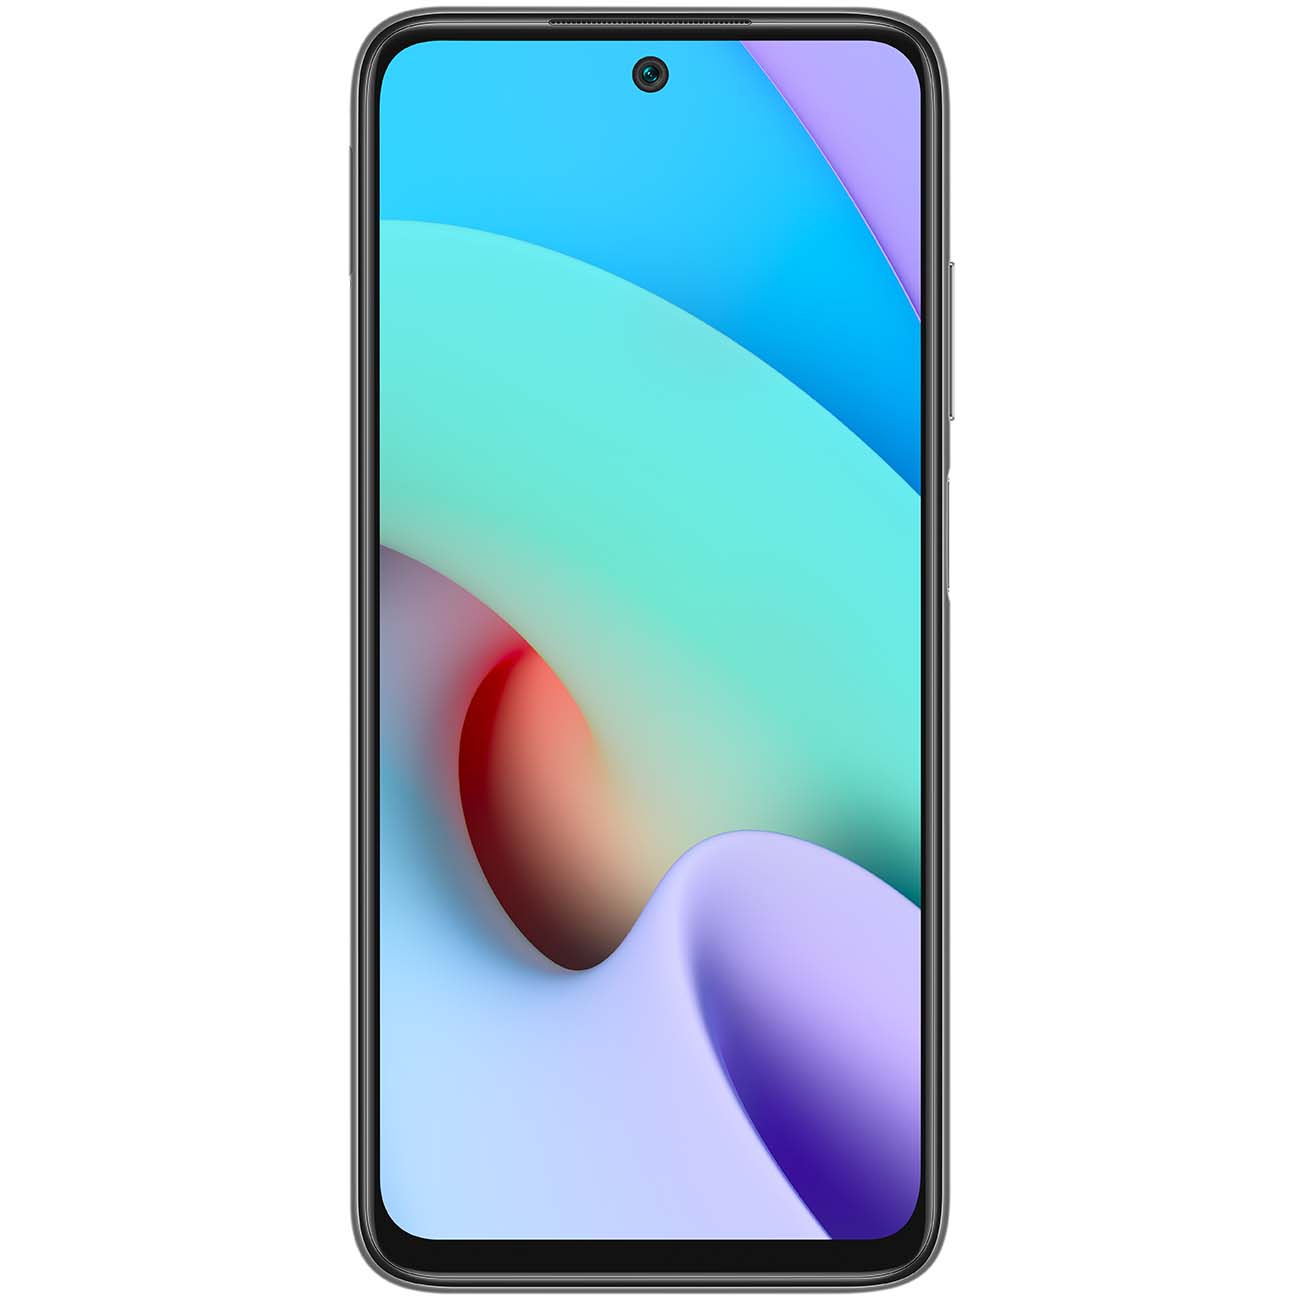 Купить смартфон xiaomi redmi 10 4+128gb carbon gray Смартфоны в официальном магазине Apple, Samsung, Xiaomi. iPixel.ru Купить, заказ, кредит, рассрочка, отзывы,  характеристики, цена,  фотографии, в подарок.